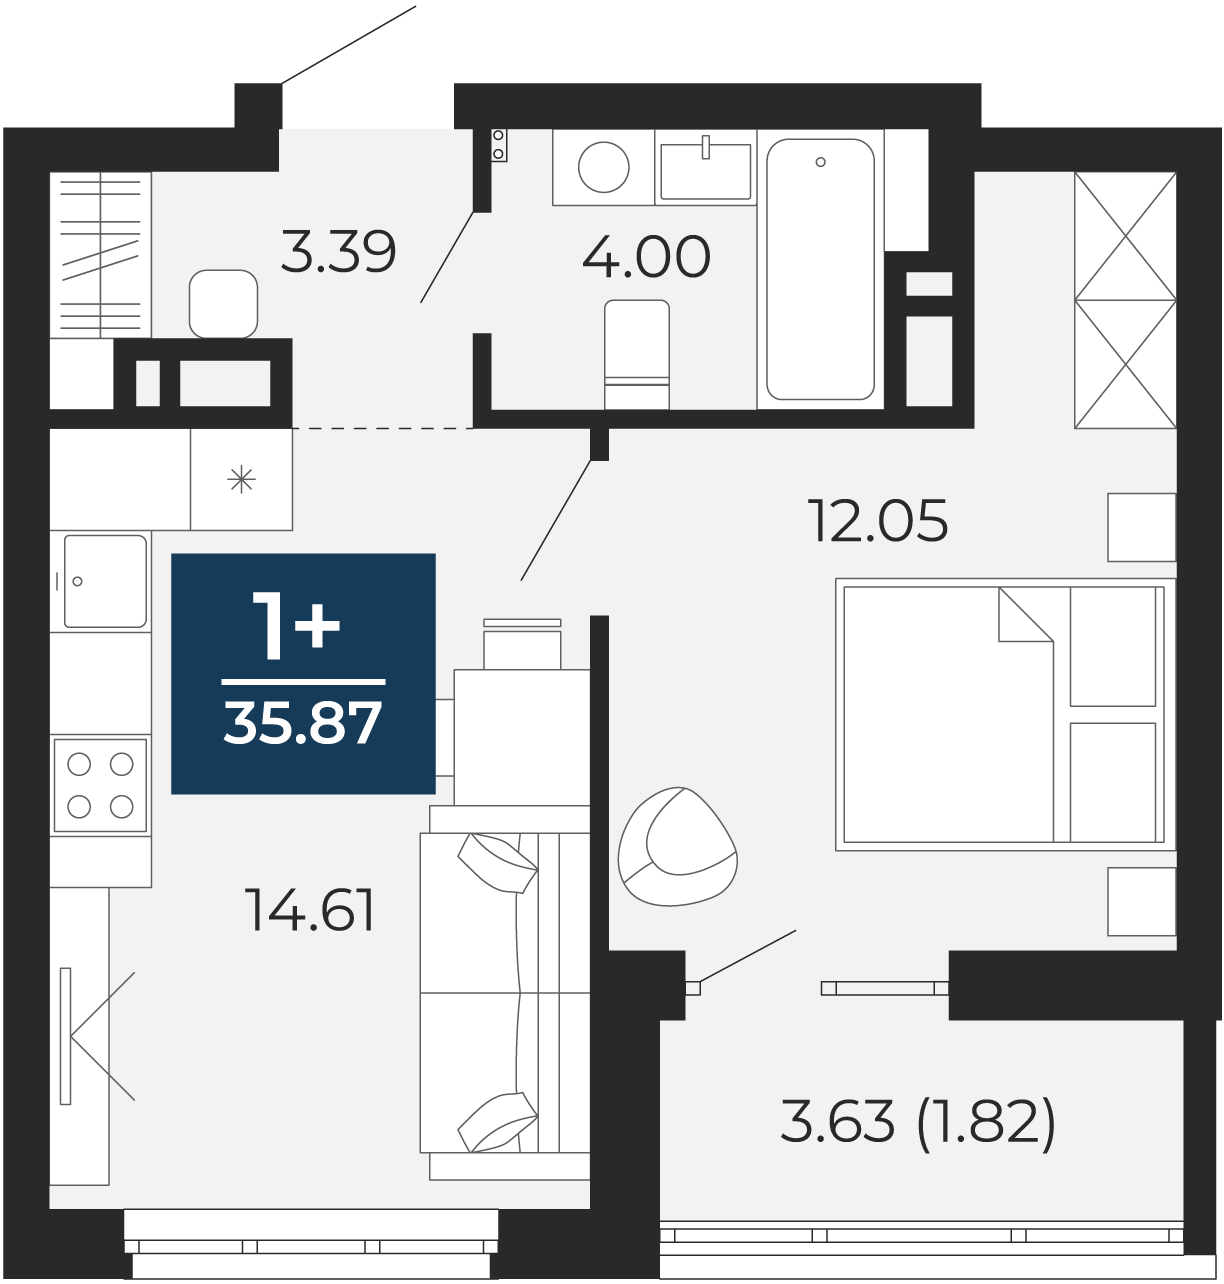 Квартира № 394, 1-комнатная, 35.87 кв. м, 9 этаж